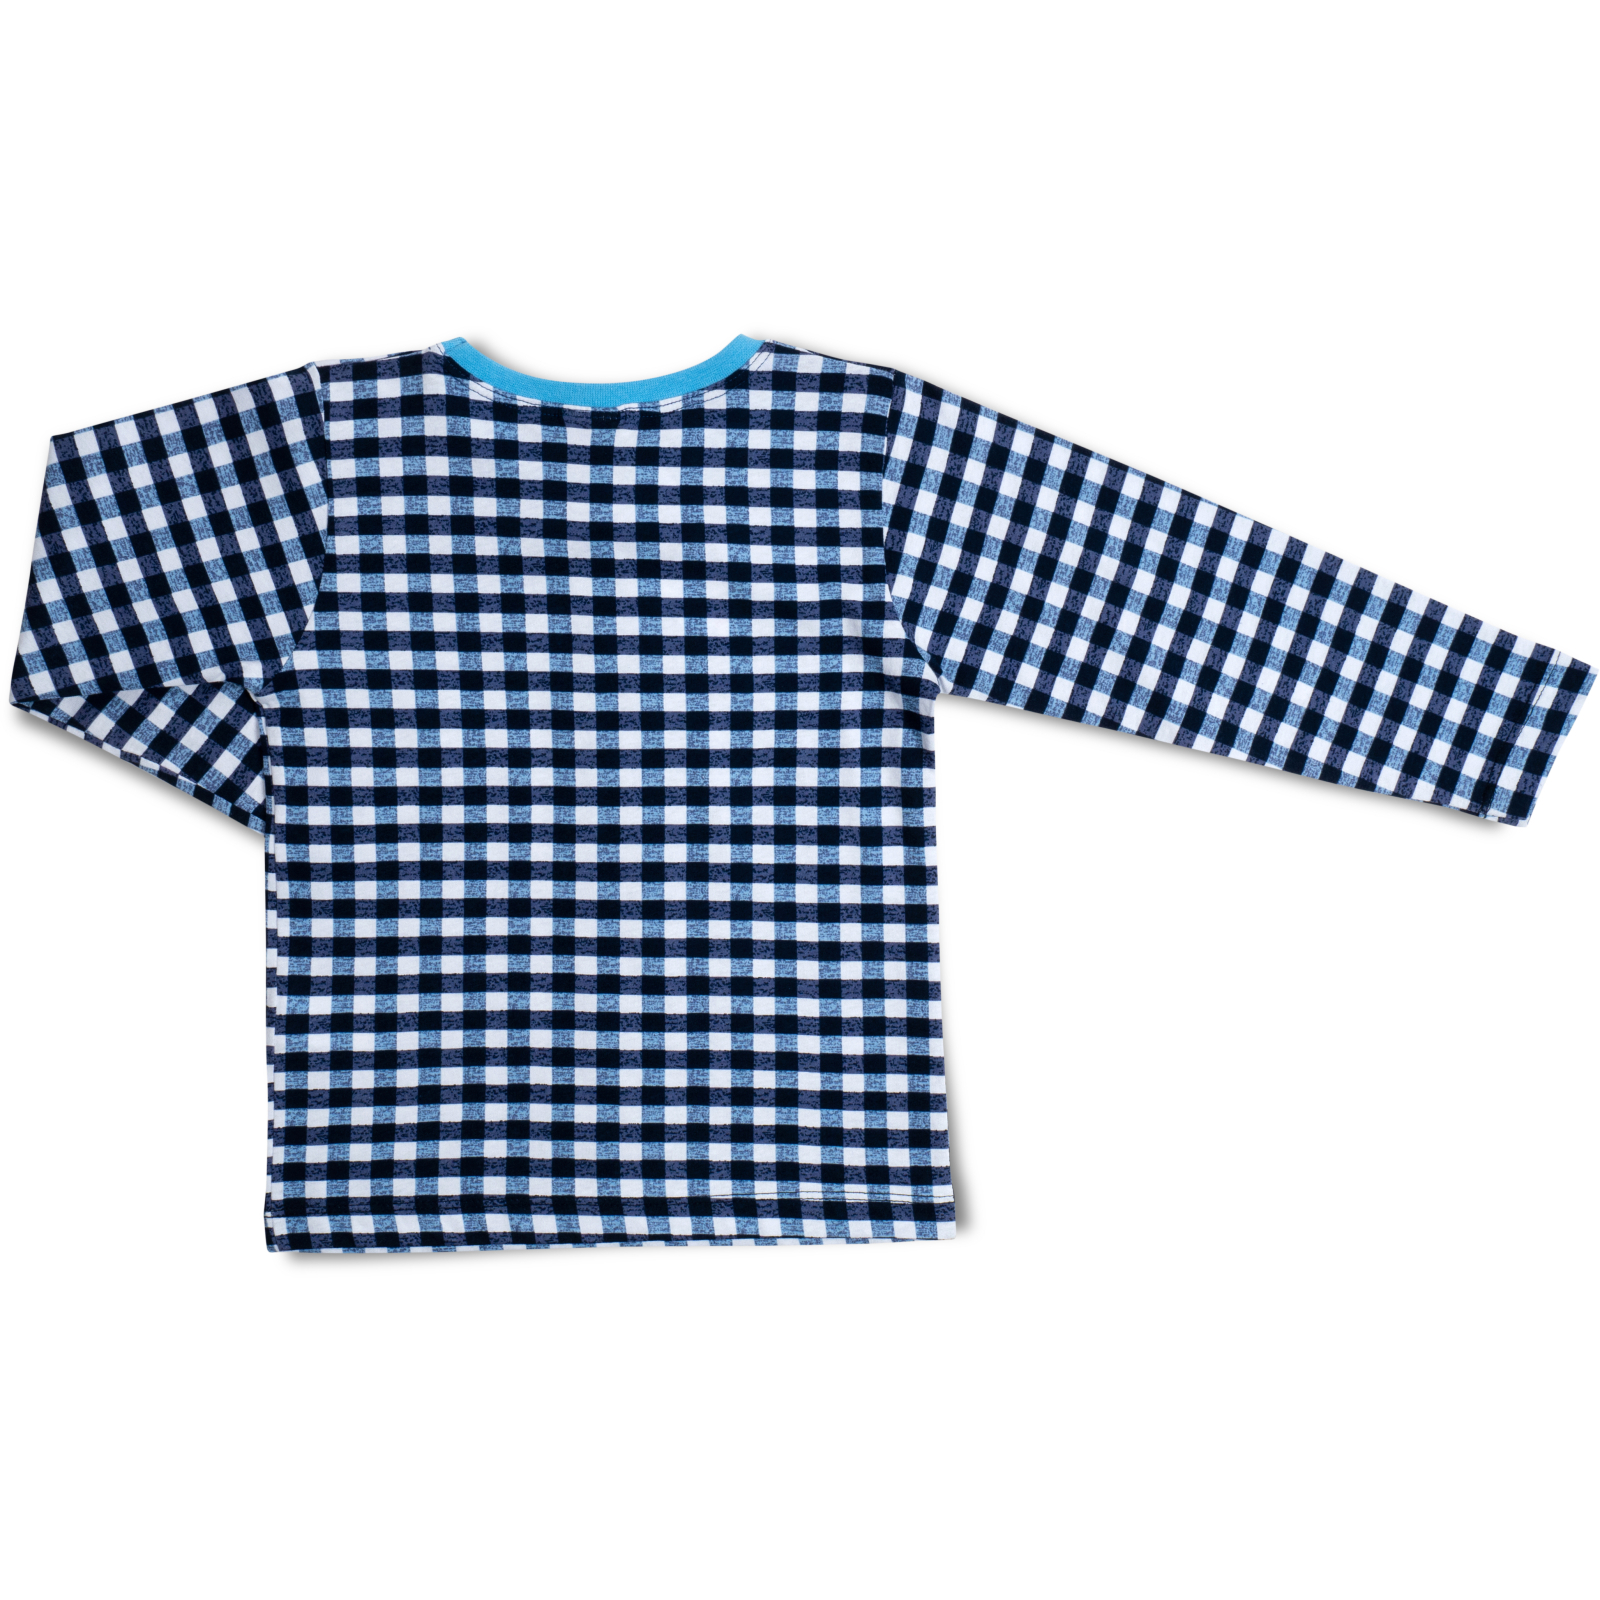 Пижама Breeze трикотажная (16030-104-blue) изображение 5